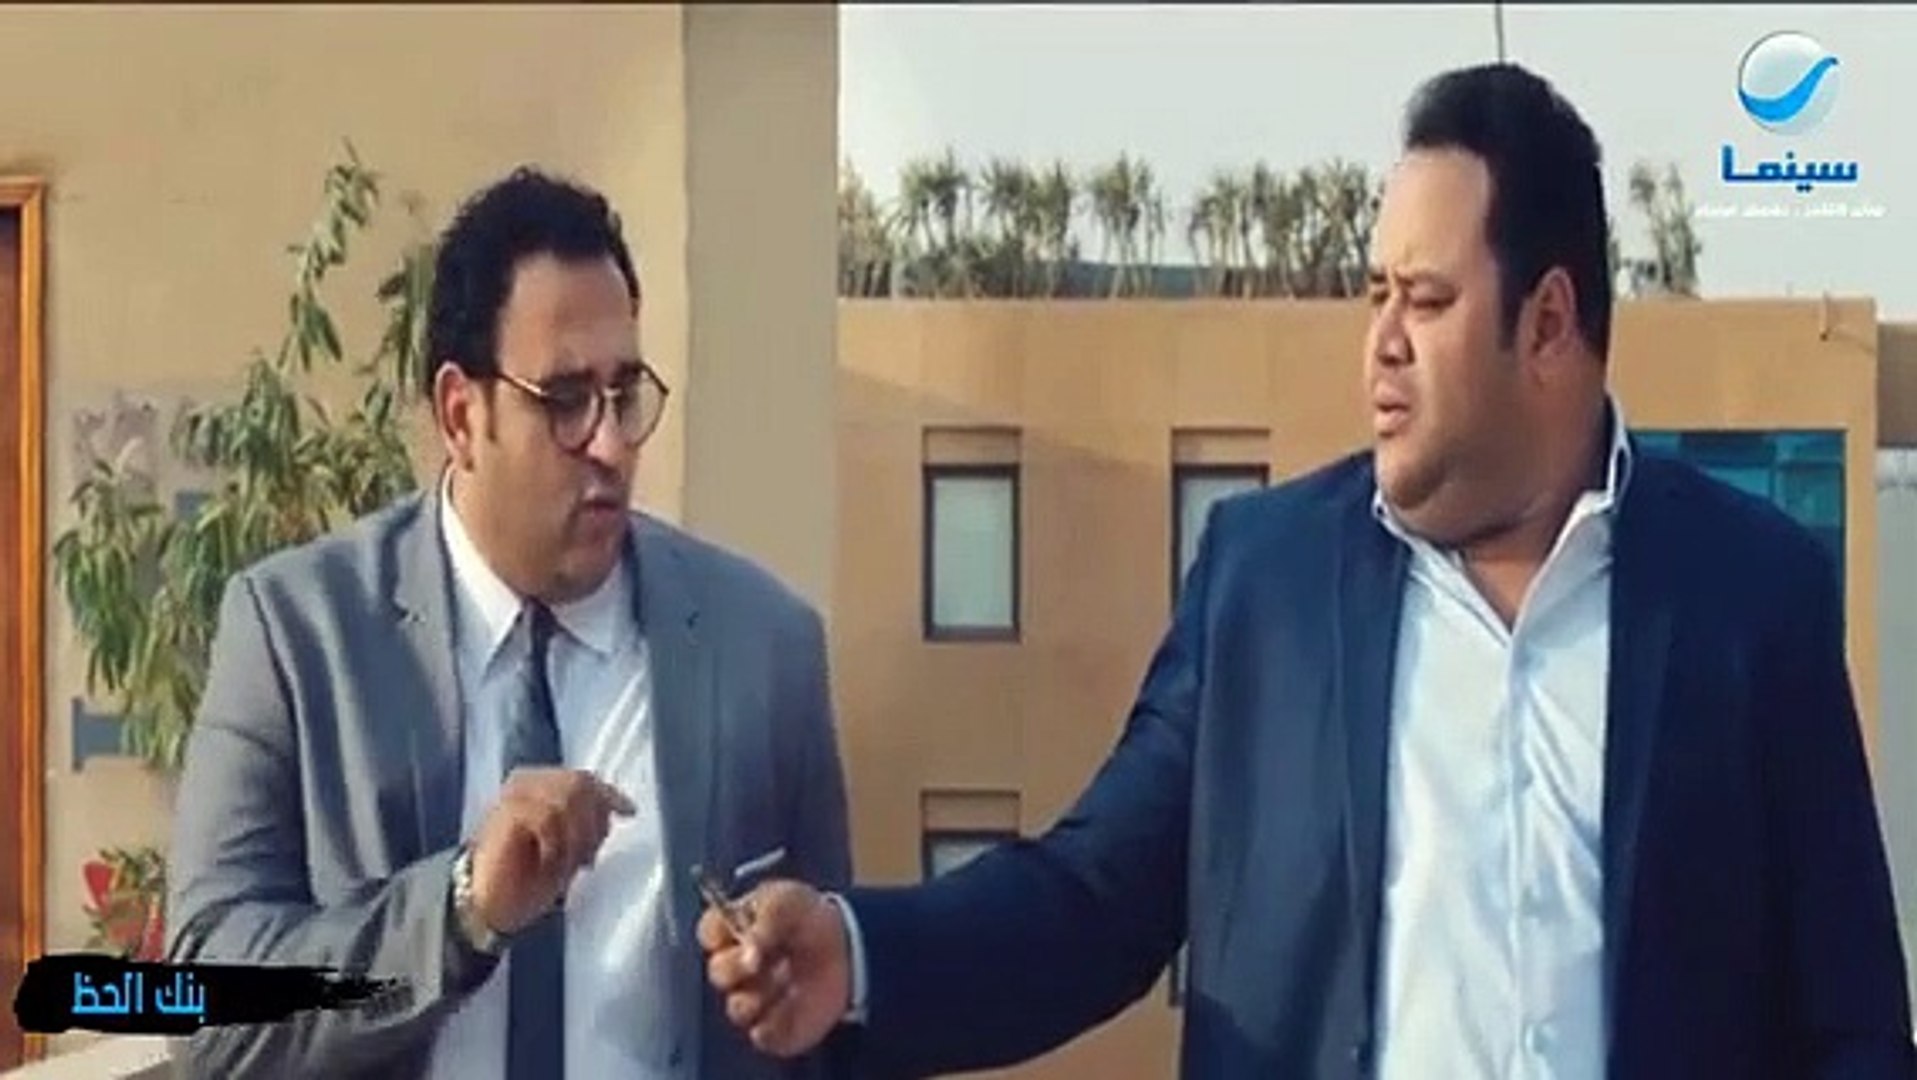 اجمل مقطع فيديو مضحك محمد ثروت واكرم حسنى - Video Dailymotion